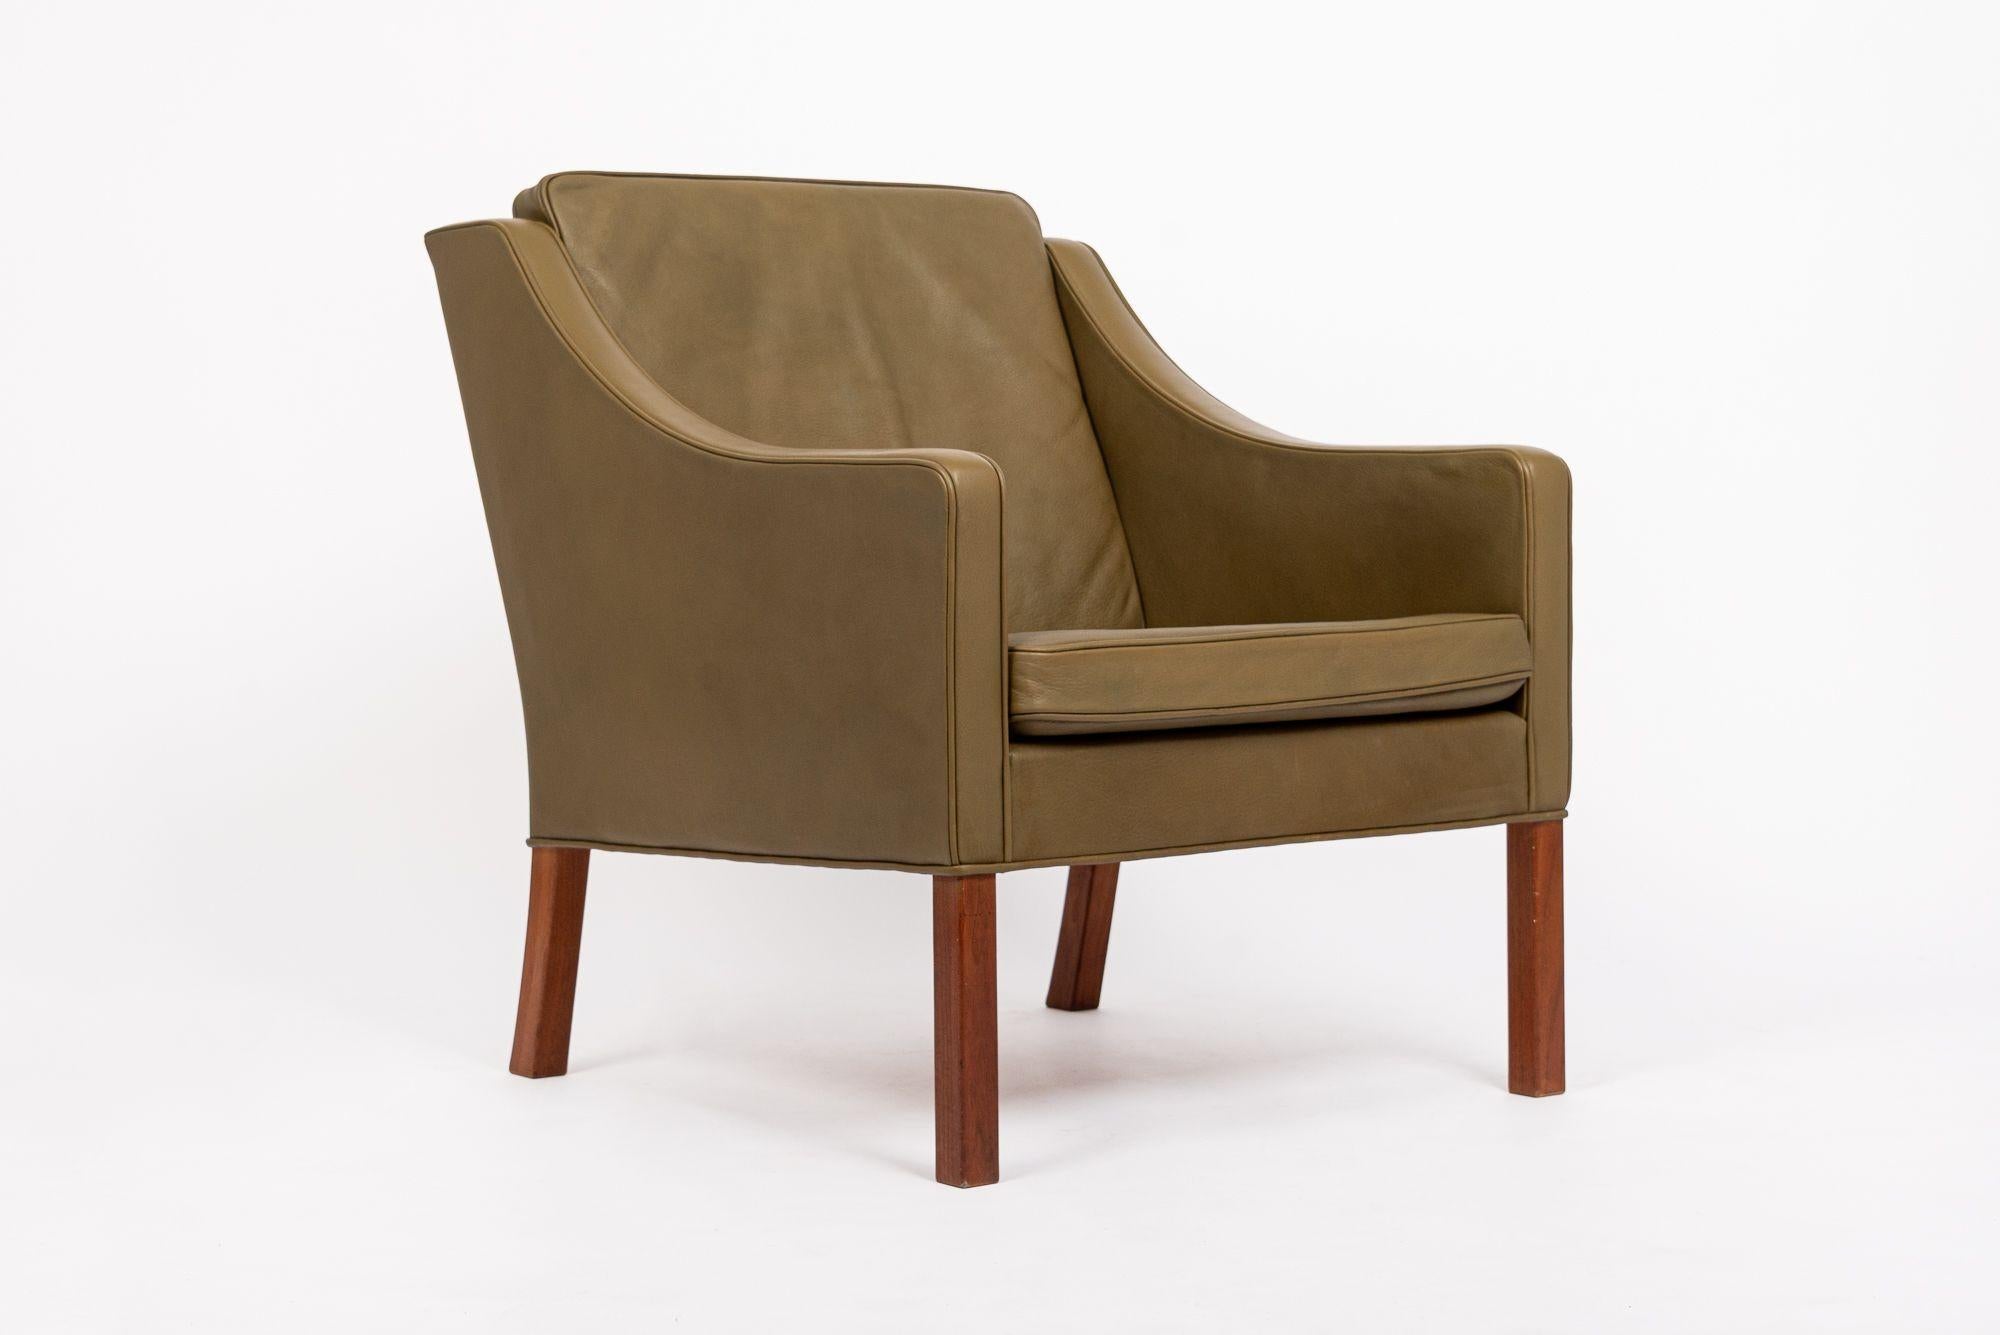 Ce fauteuil club vert de style moderne danois du milieu du siècle, modèle 2207, a été conçu par Børge Mogensen en 1963 et fabriqué au Danemark par Fredericia. Cette chaise longue Mogensen présente un design moderne danois classique aux lignes